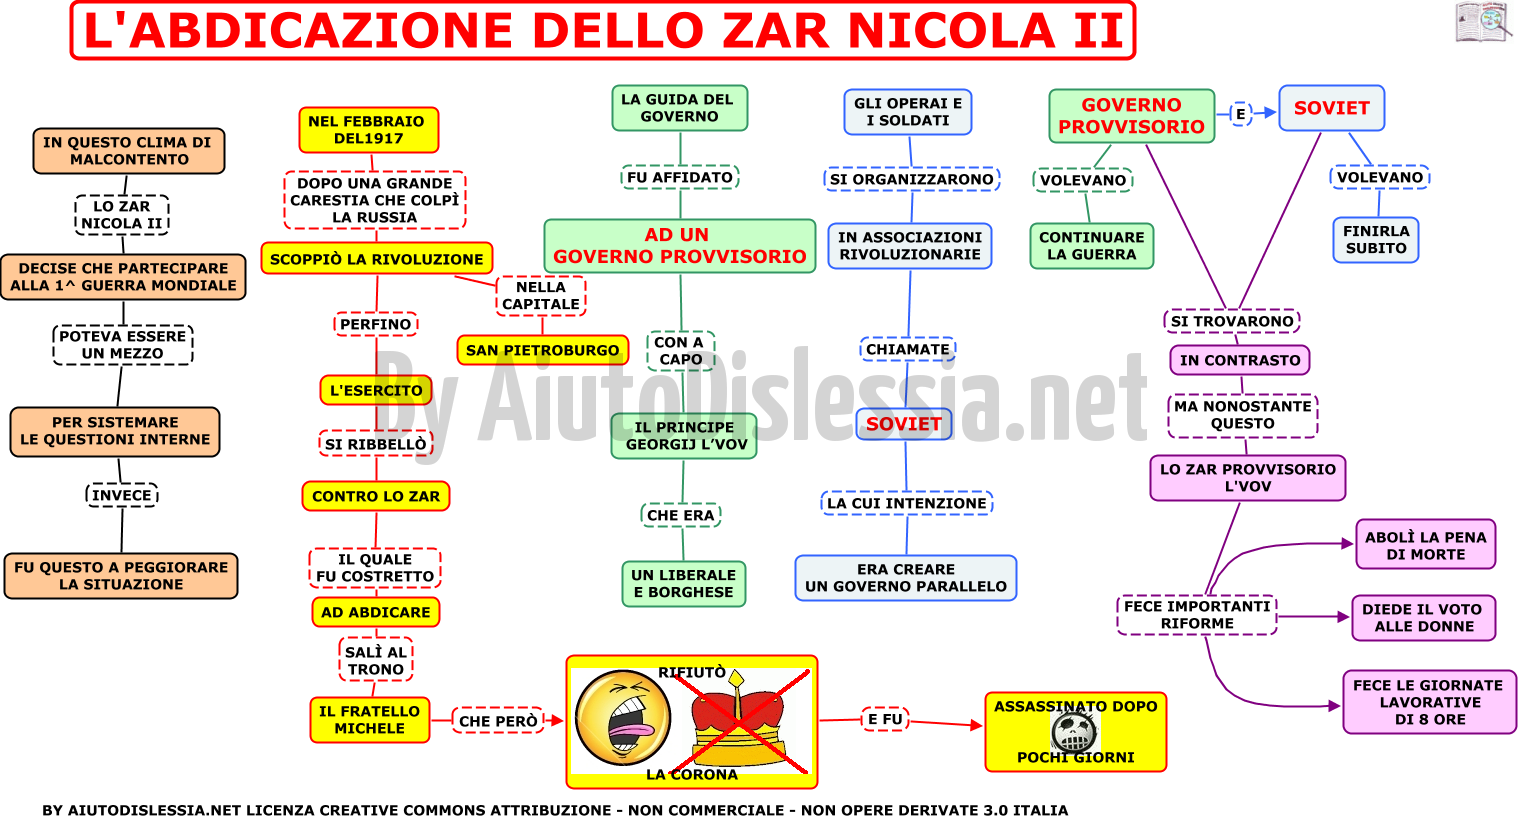 03-labdicazione-dello-zar-nicola-ii